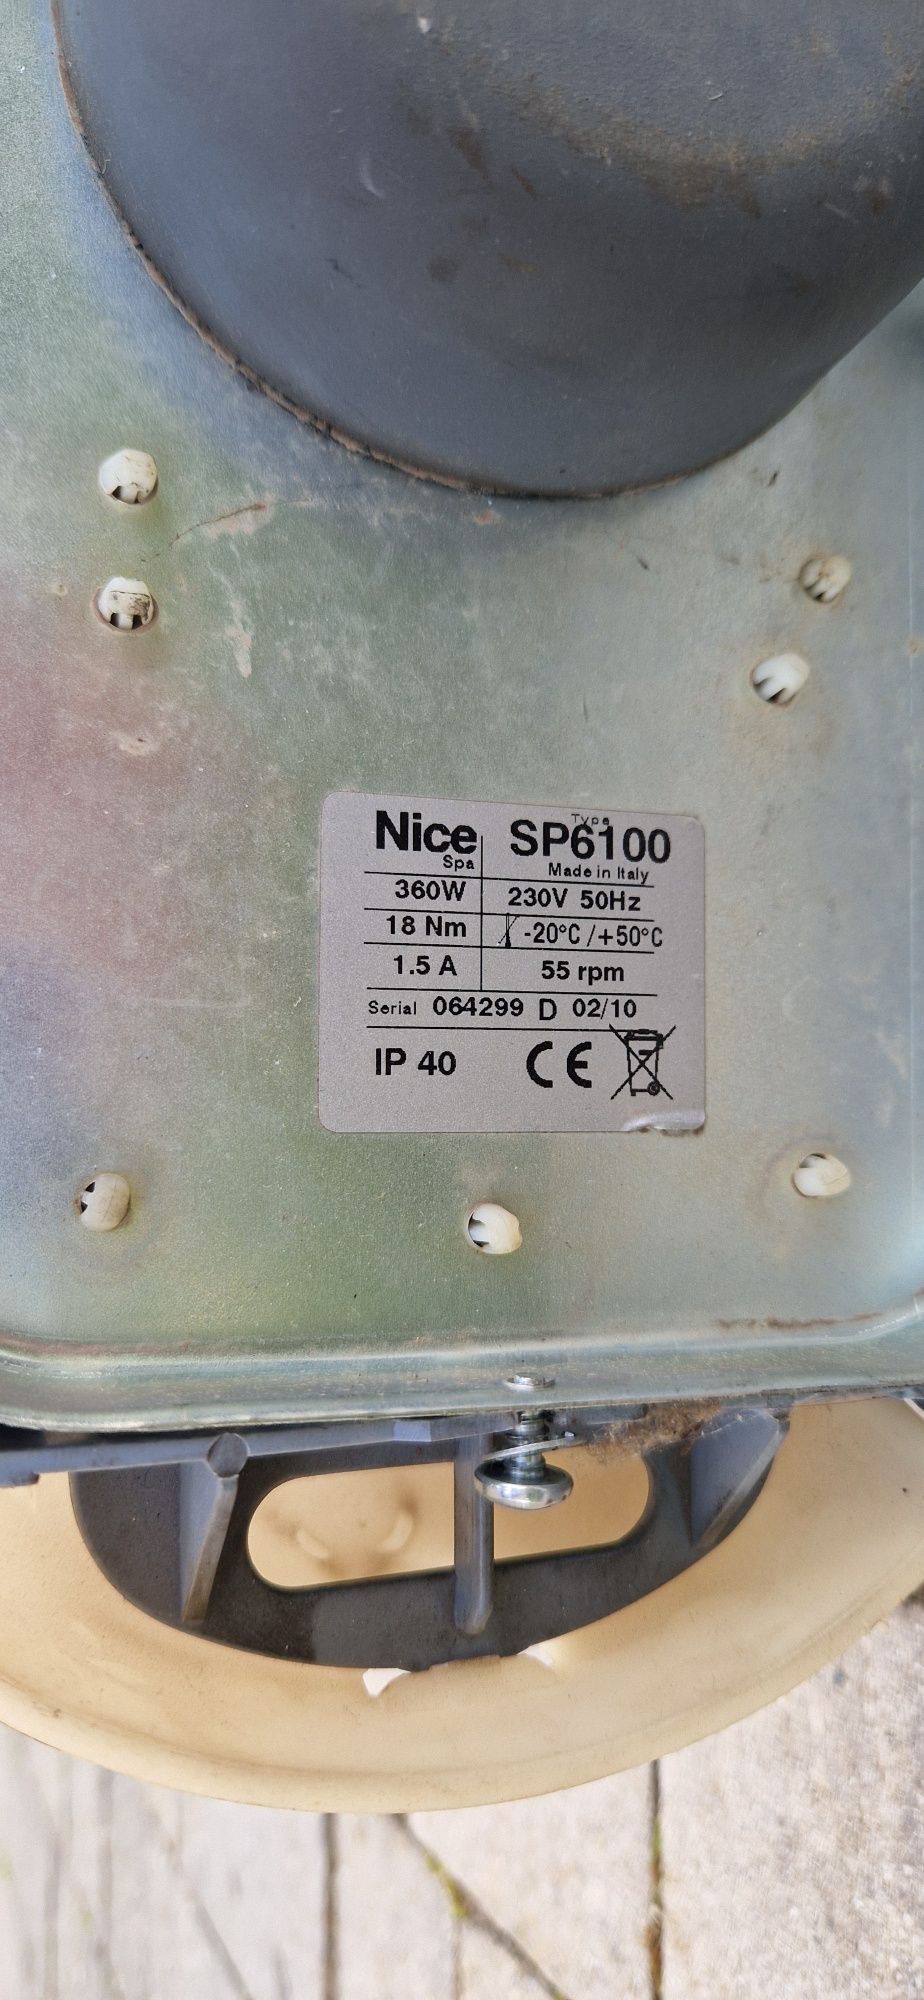 Napęd Nice Spider SP6100 używany, sprawny